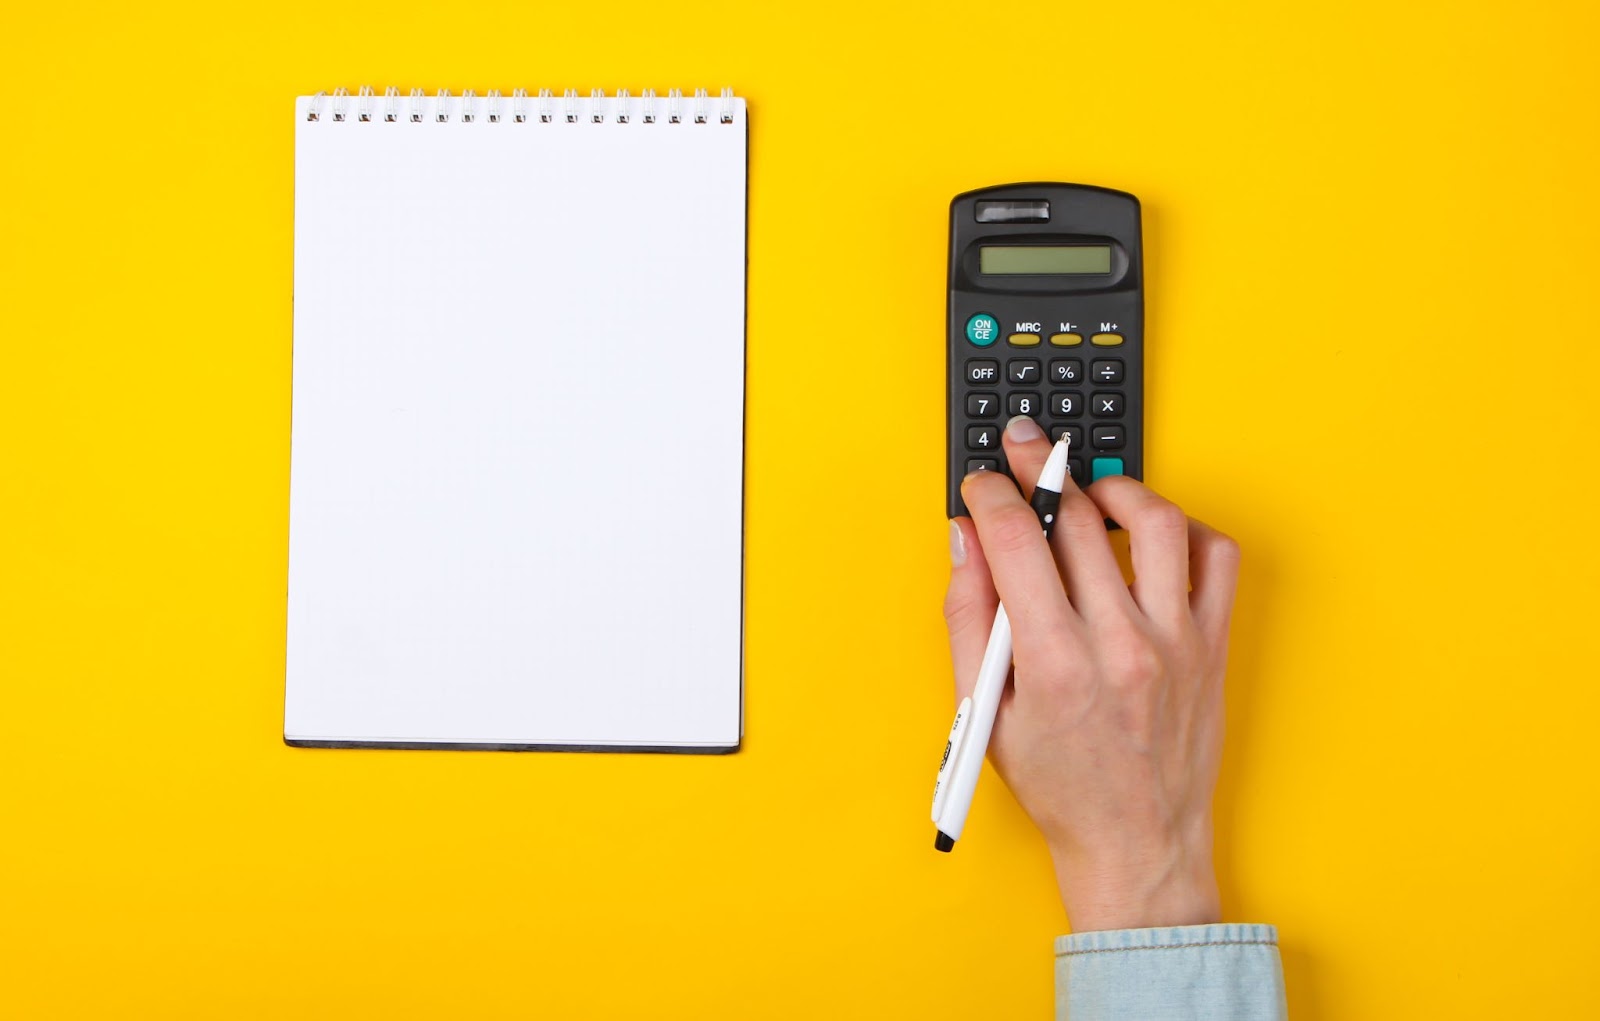 Imagem focada em uma mão que está mexendo em uma calculadora, enquanto um caderno com folha em branco está ao lado do objeto. A mão é branca e há uma caneta apoiada entre os dedos. A superfície onde tudo está apoiado é amarela.